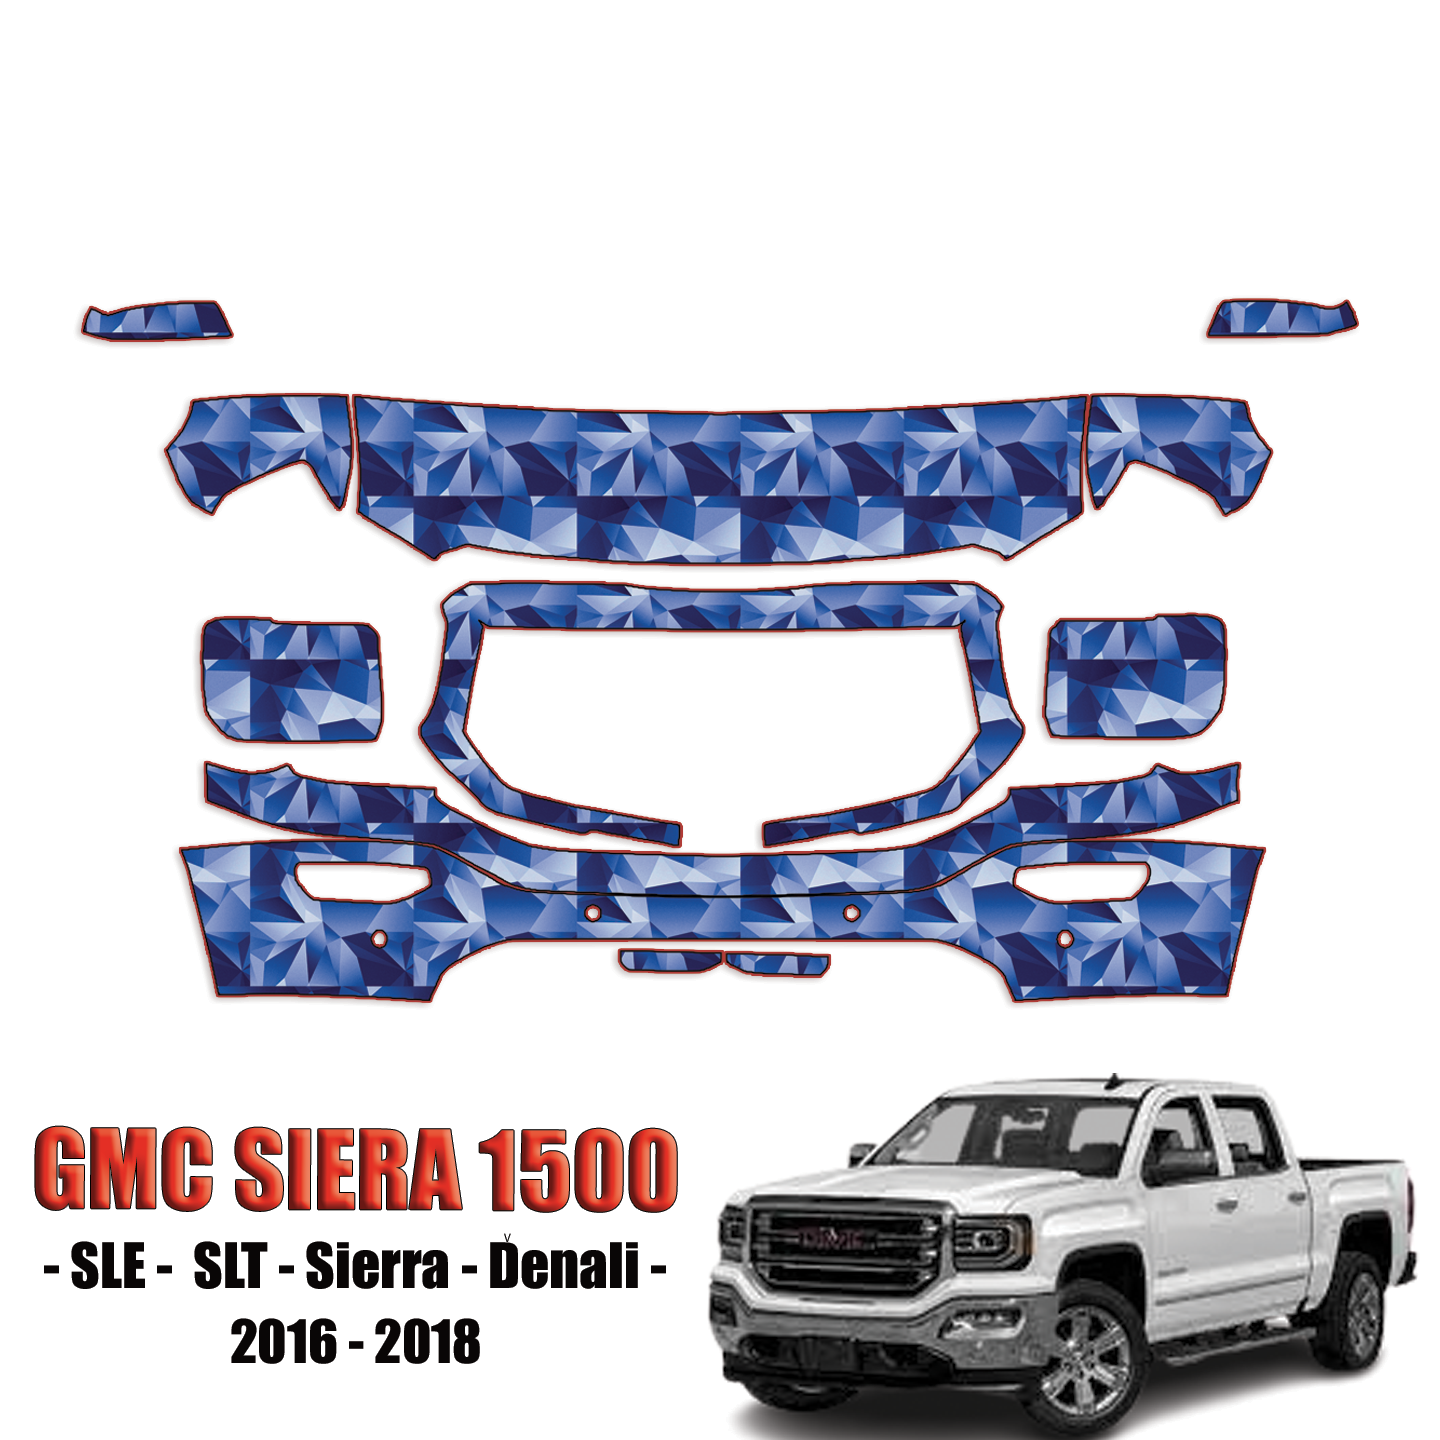 2016-2018 GMC Sierra 1500 – SLE, SLT, Sierra, Denali Precut Paint Protection Kit – Partial Front